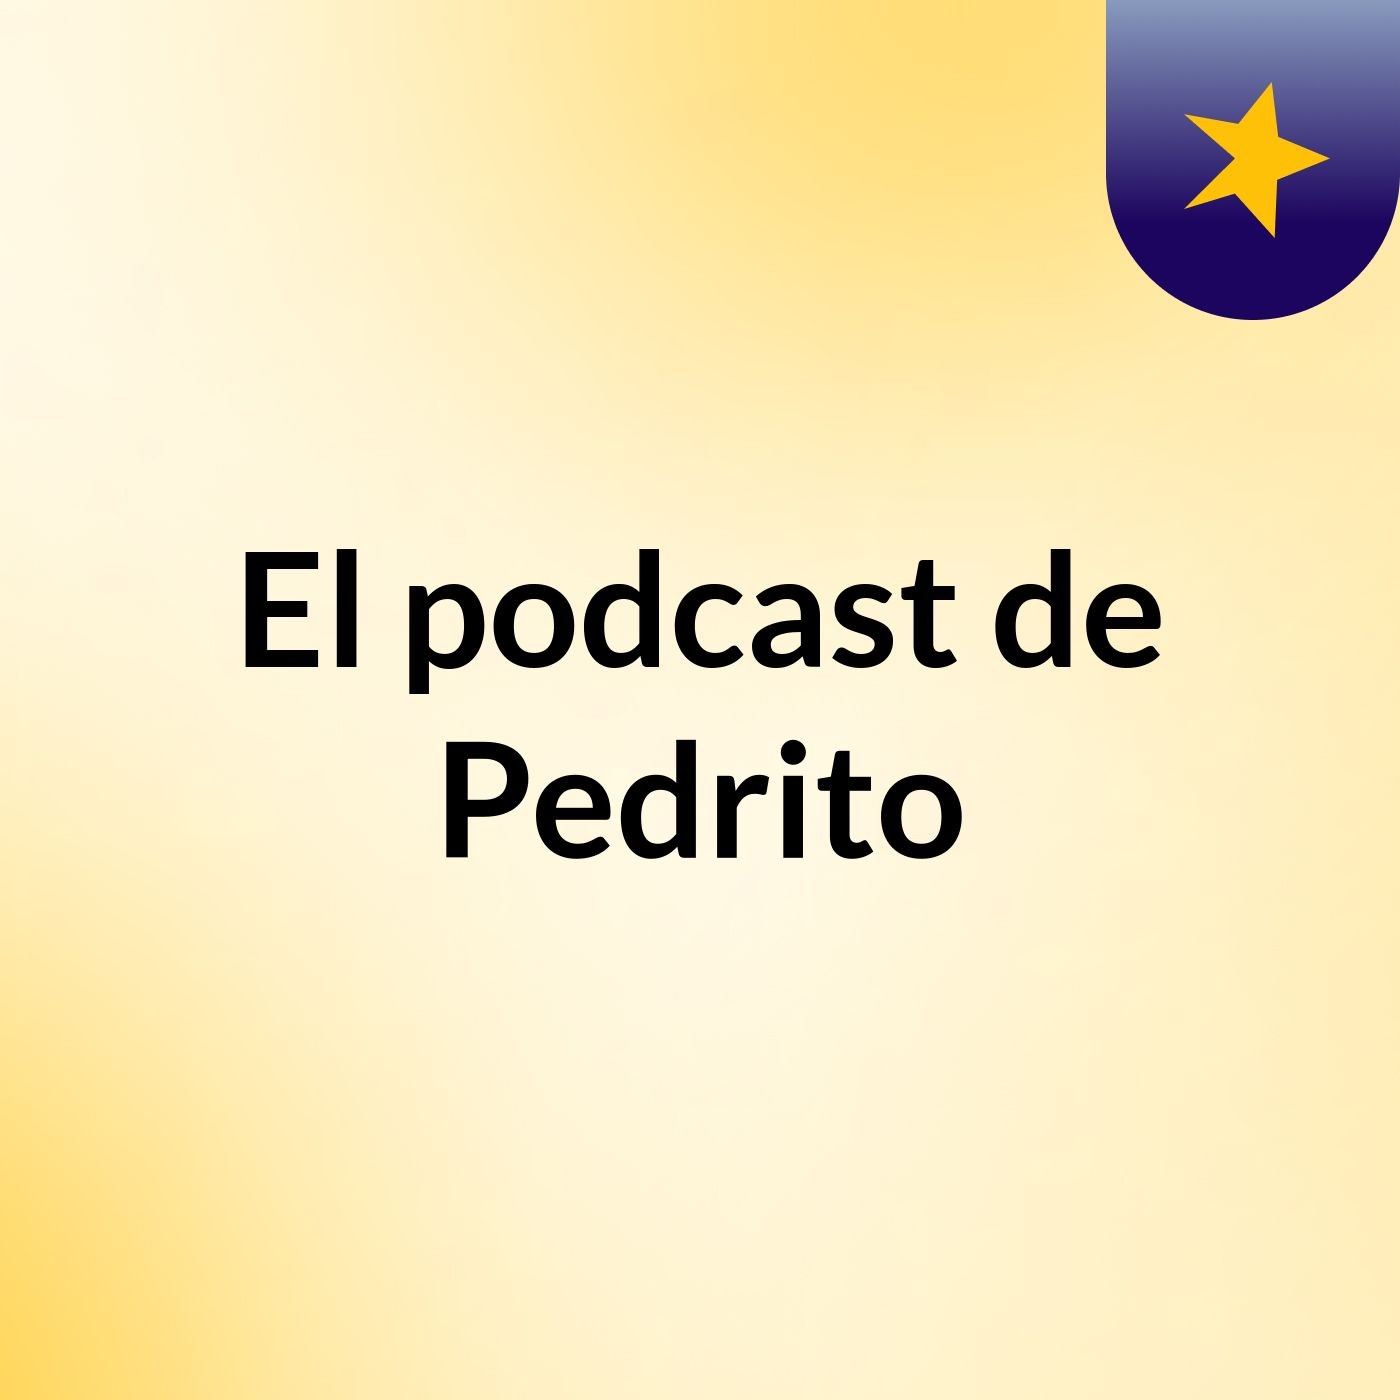 El podcast de Pedrito